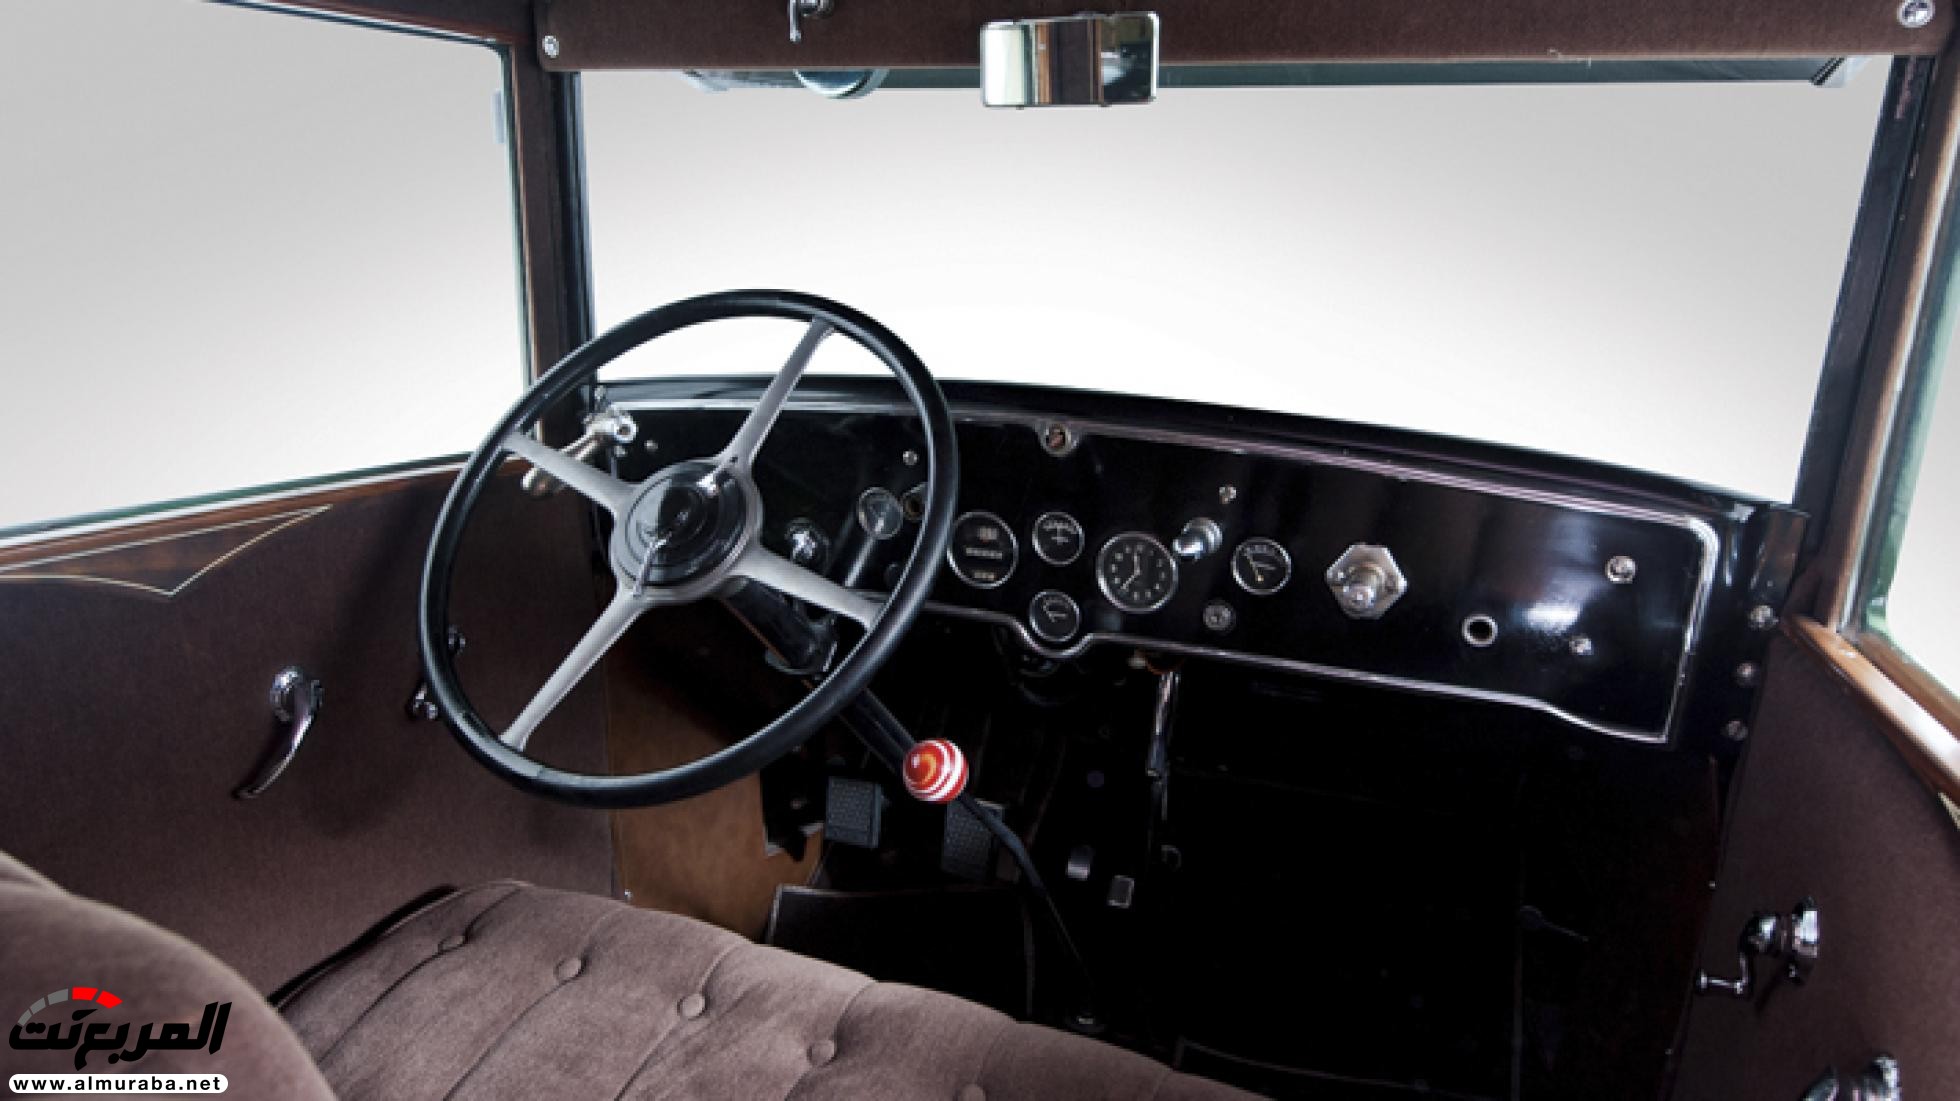 "بالصور" أول سيارة كاديلاك مصفحة بالتاريخ والتي امتلكها آل كابوني زعيم العصابات الأمريكية 26